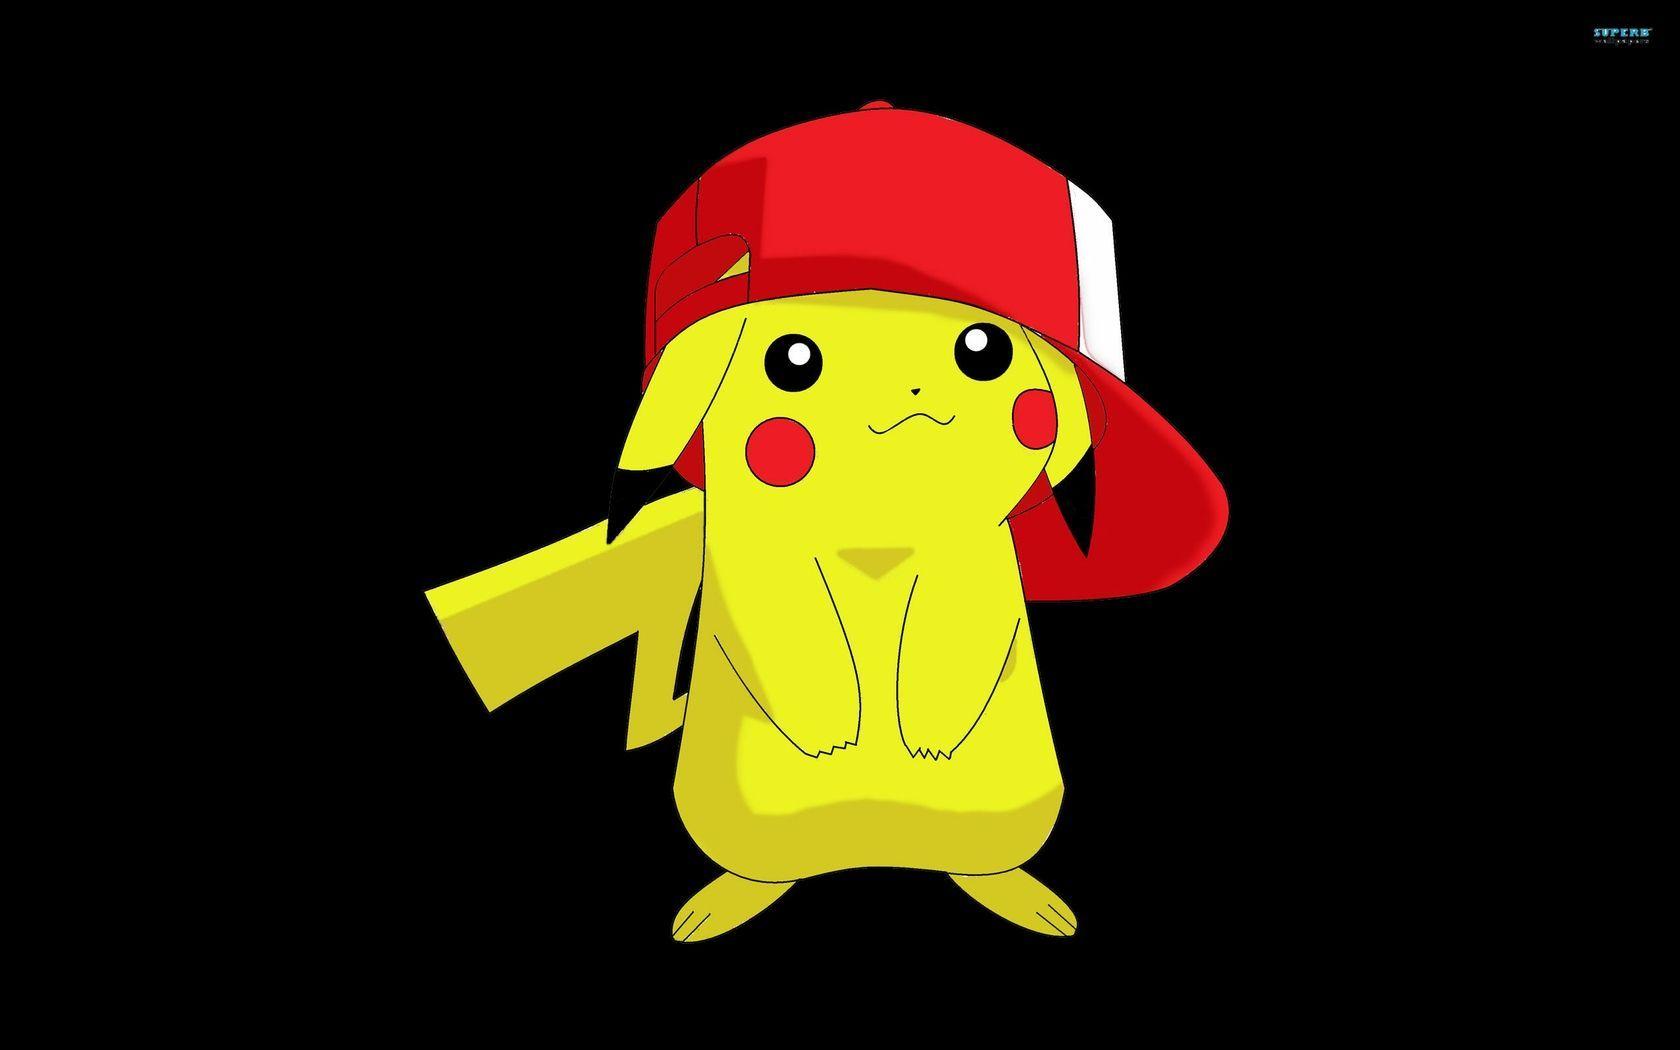 Pokemon Pikachu Wallpaper Image